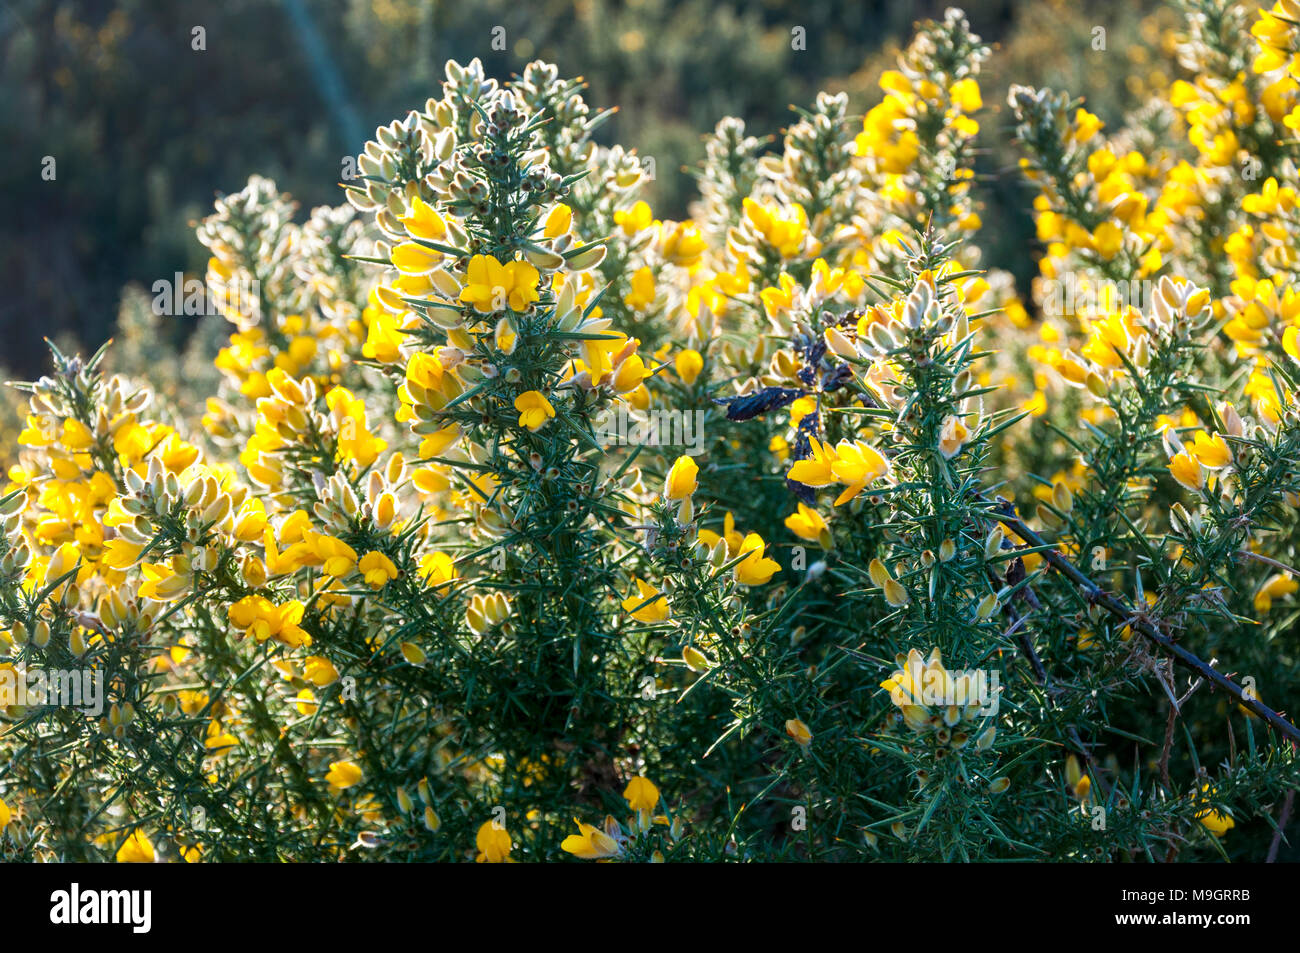 L'ajonc avec fleurs jaune vif et dur, des épines. Aiteann gallda Ulex europaeus Fabaceae Banque D'Images